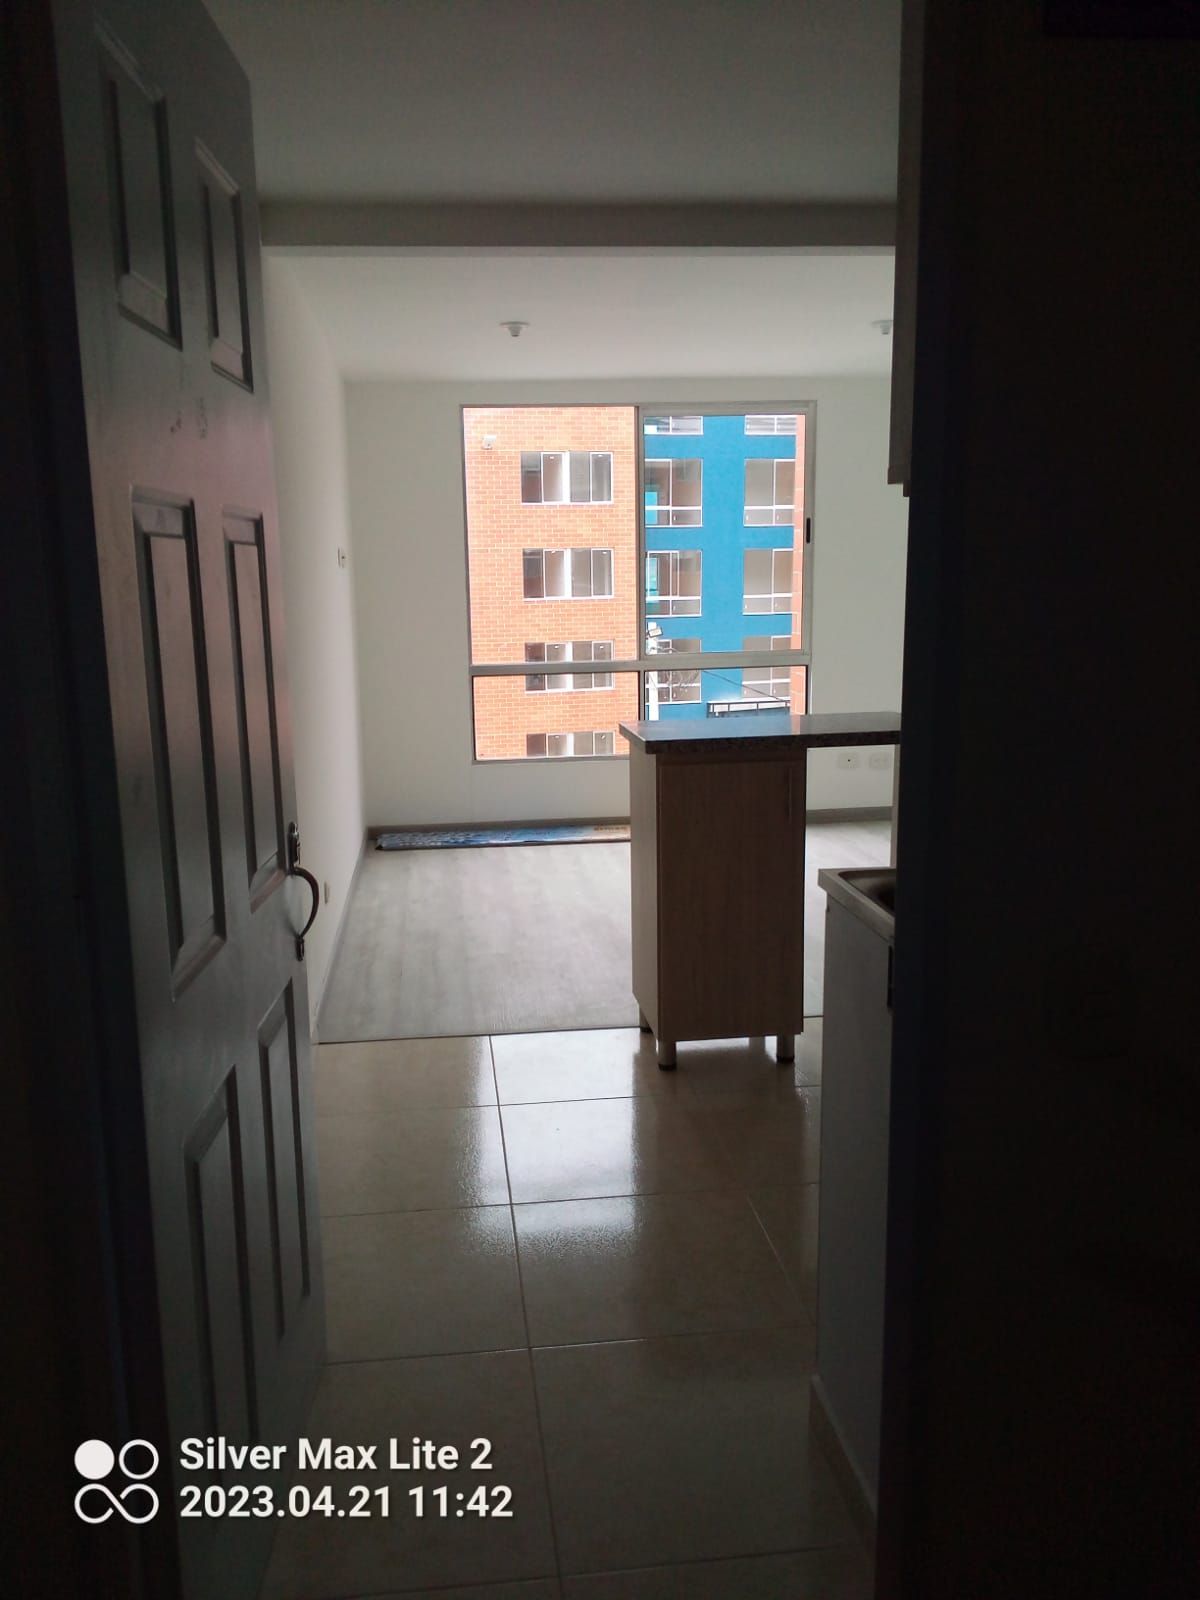 Apartamento en arriendo Cajicá 49 m² - $ 900.000